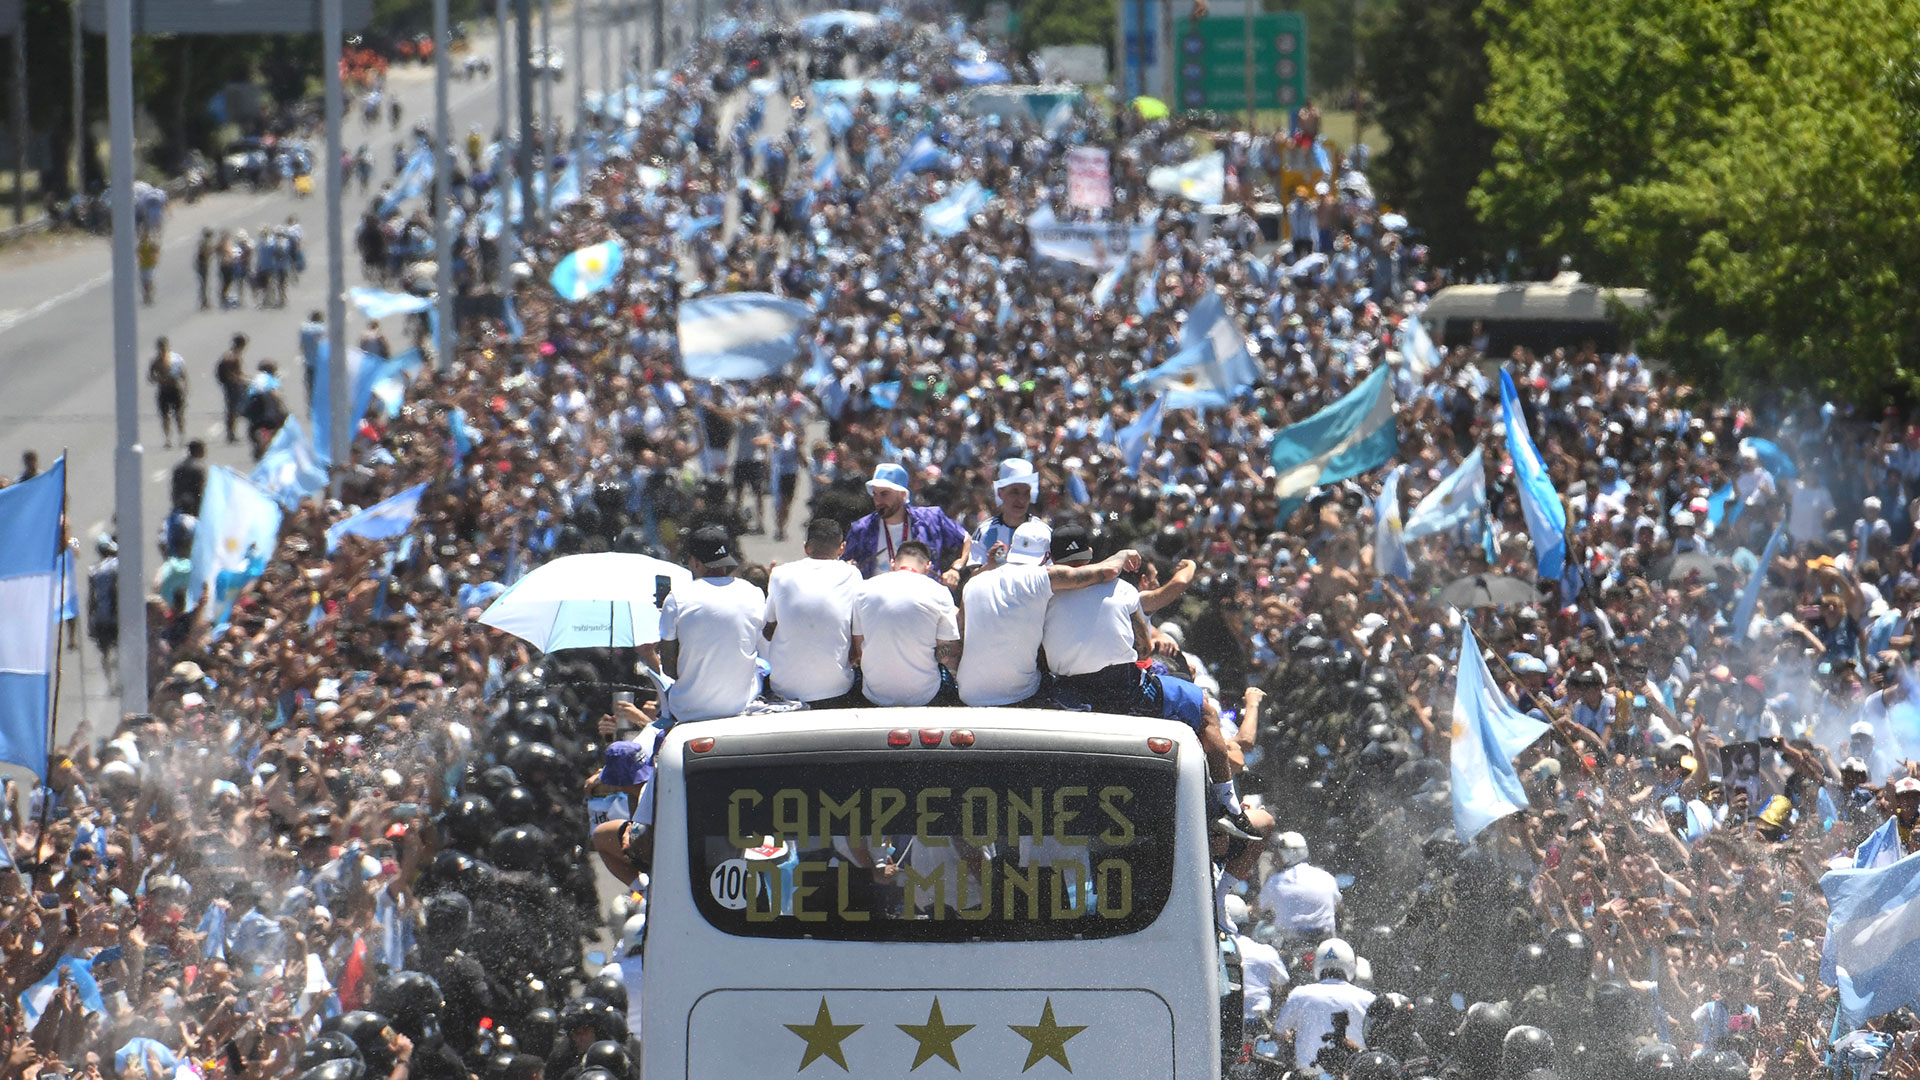 Emoción a flor de piel: ¿cómo influye la alegría por la Copa del Mundo en la vida diaria de los argentinos?